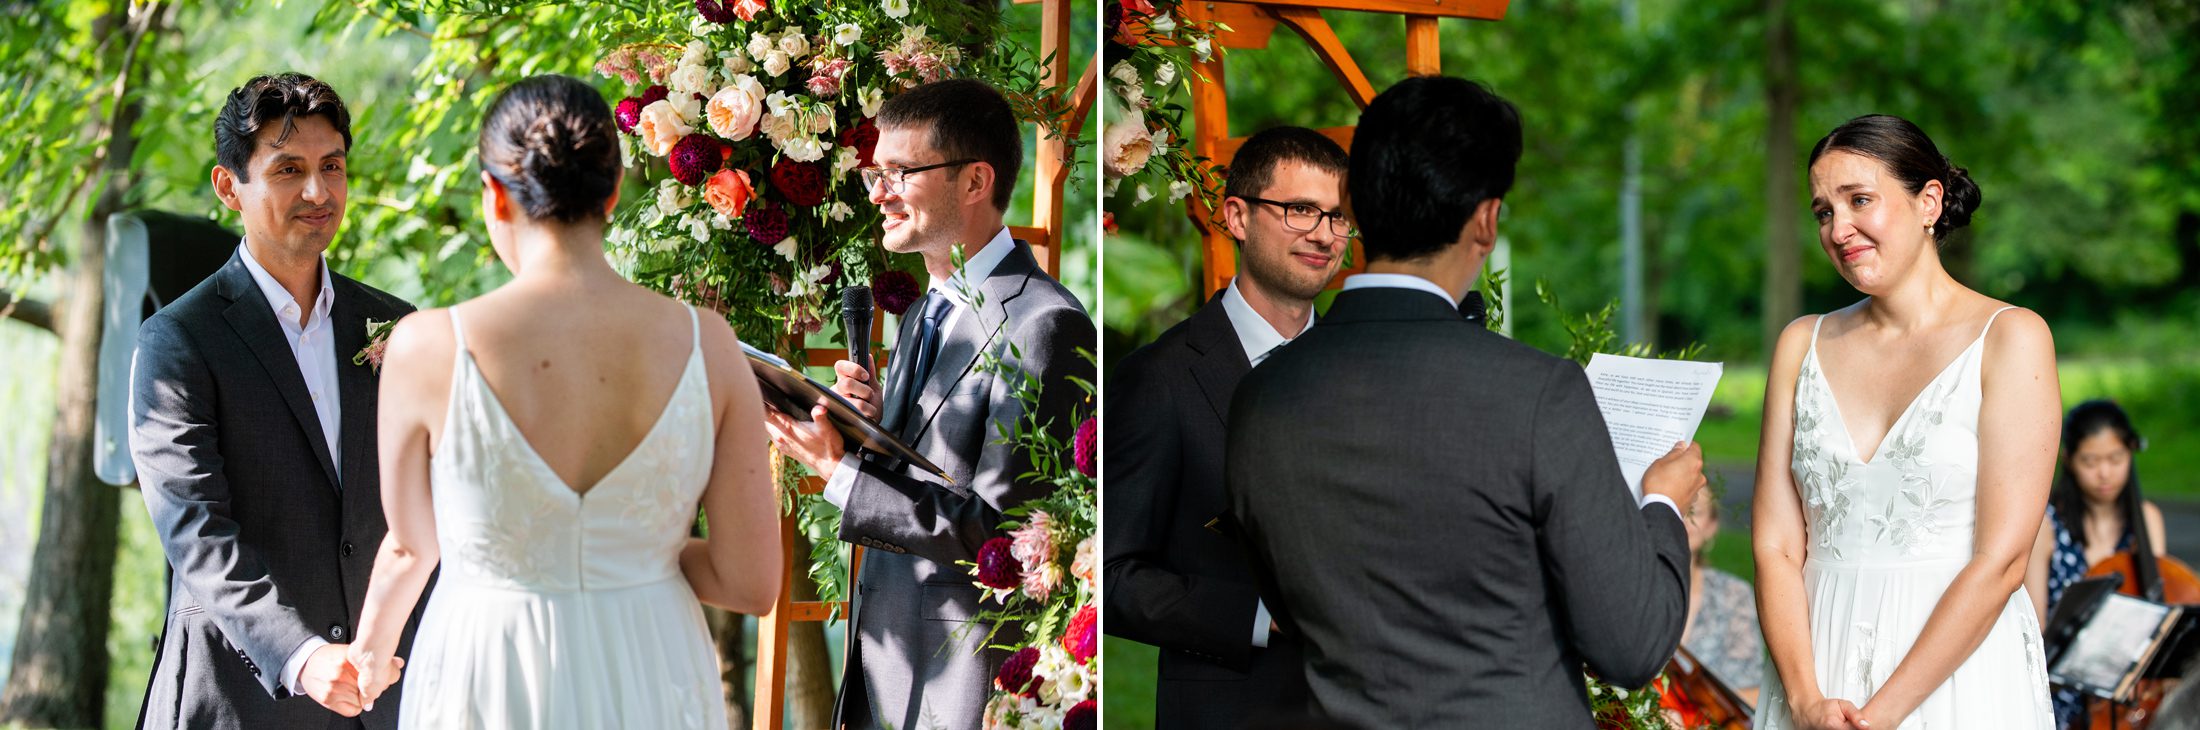 Wedding Ceremony at Van Cortlandt Park 